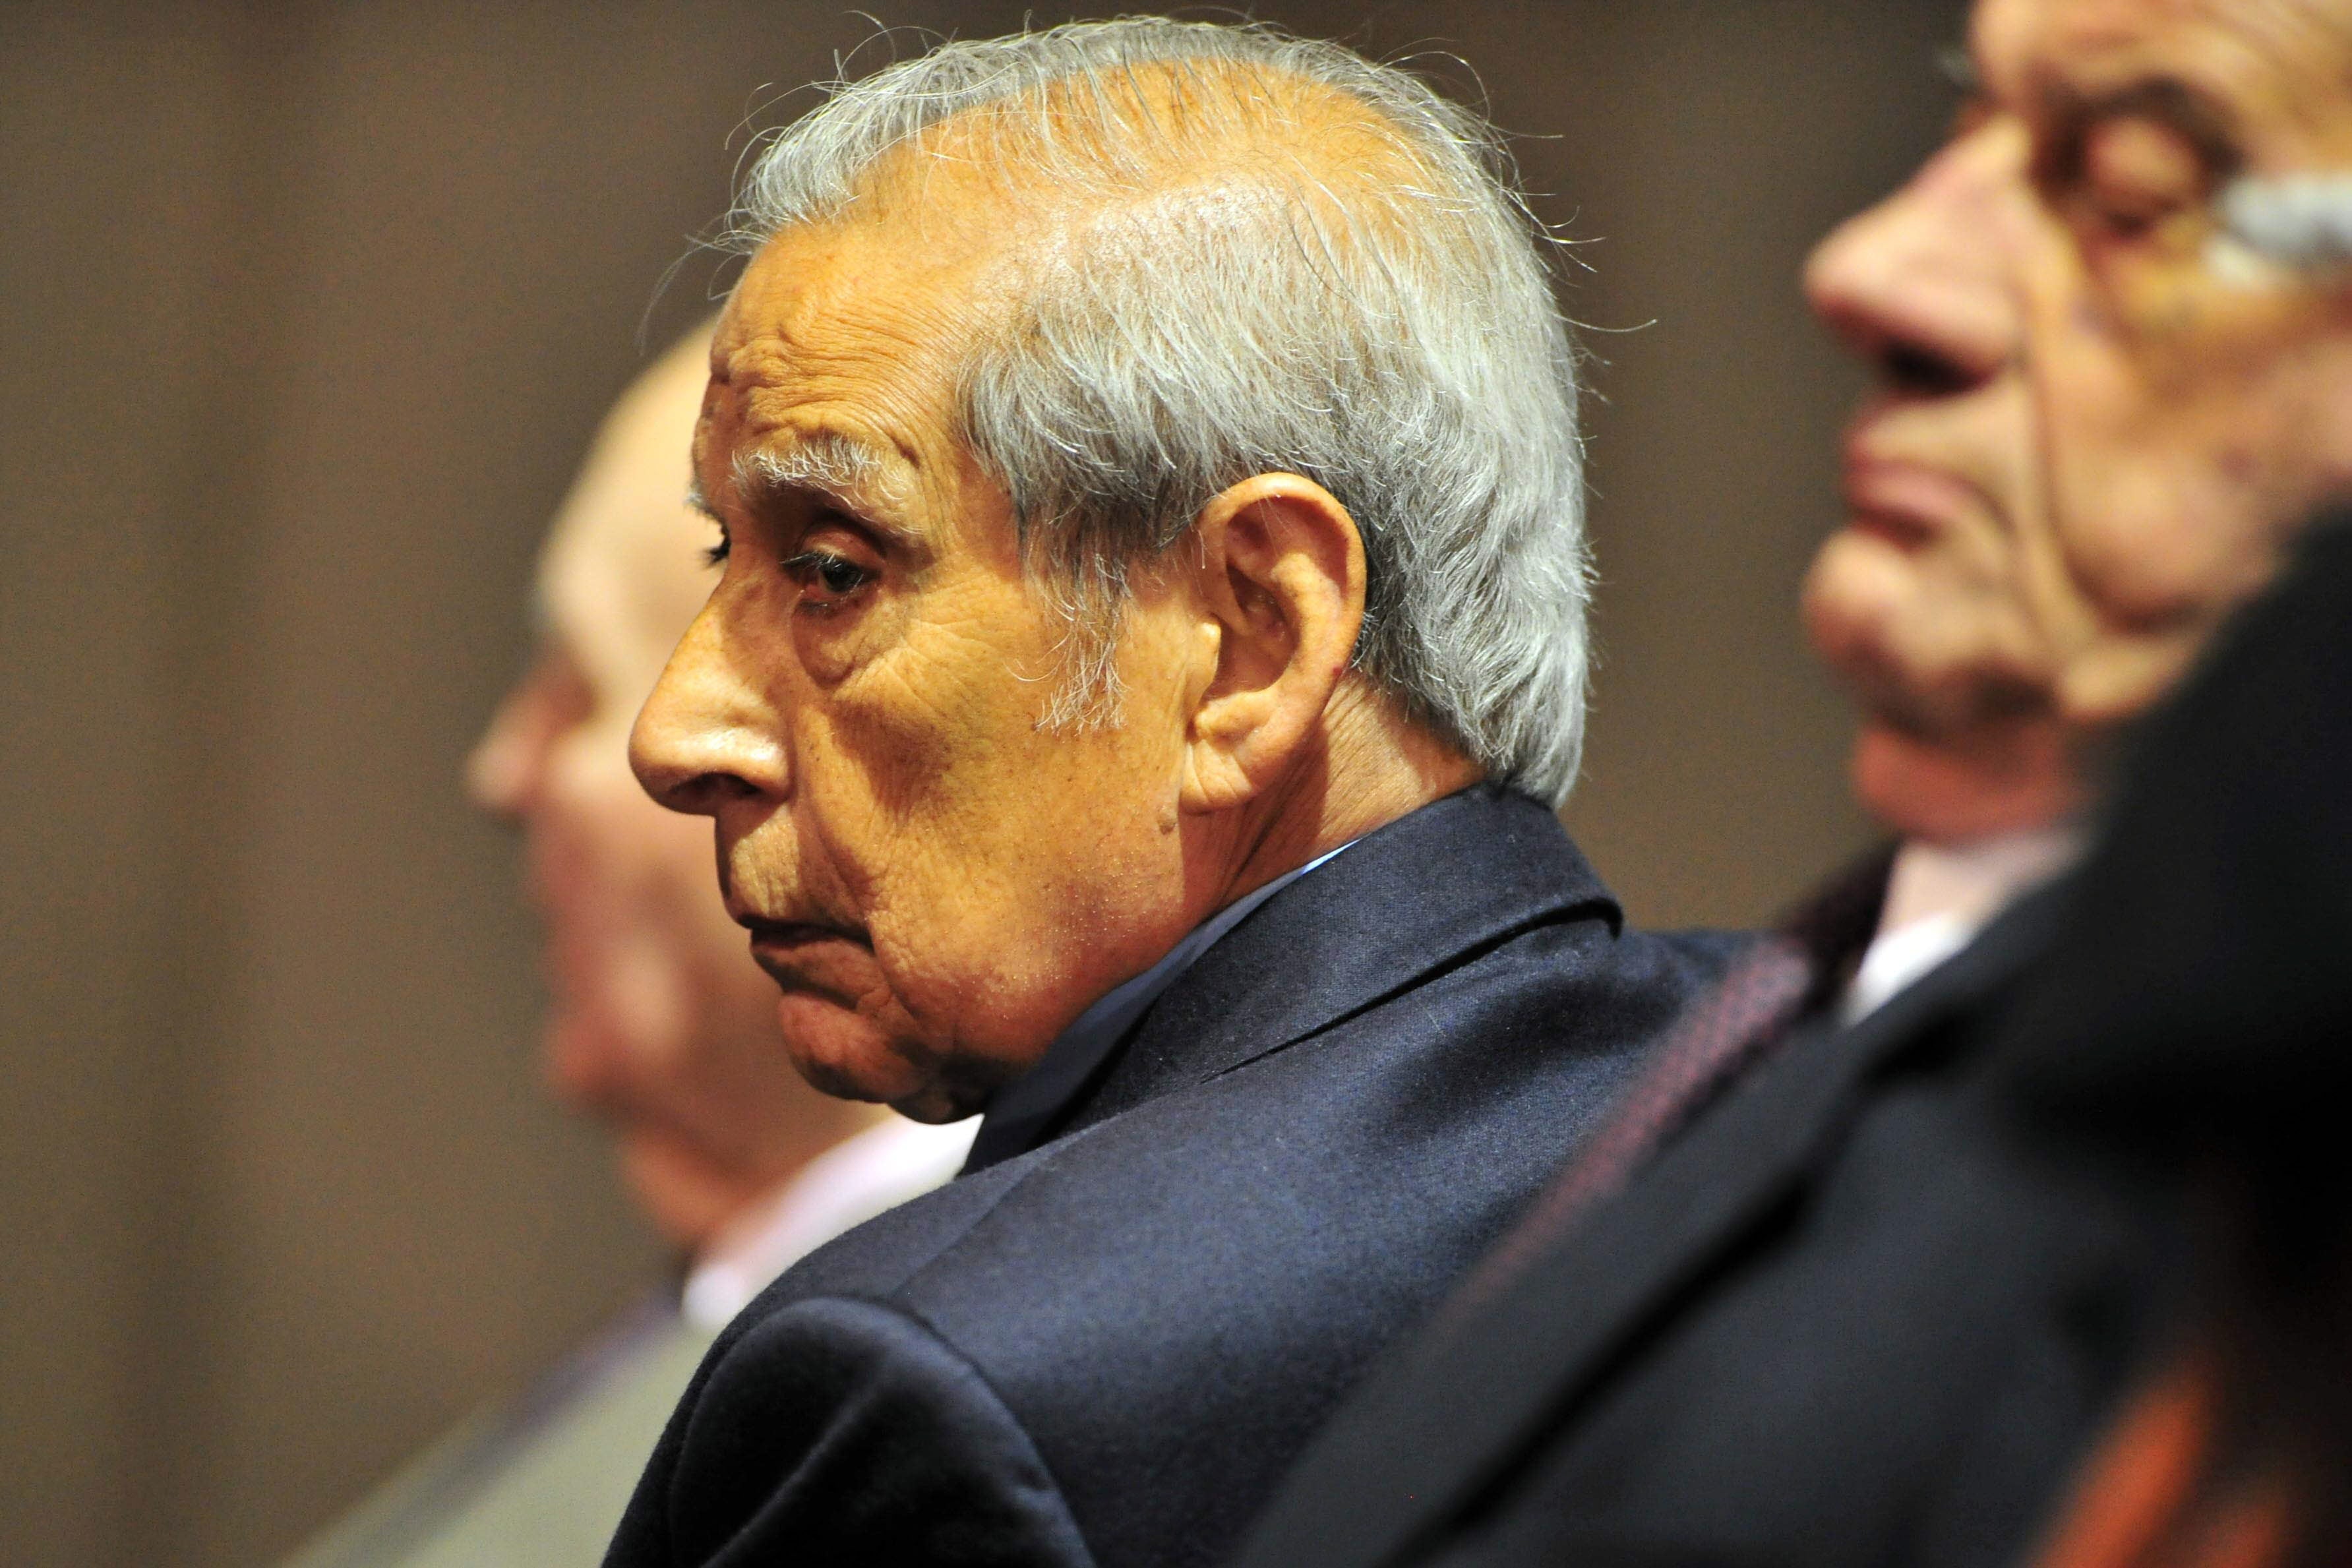 El excapitán Luis Sosa escucha la sentencia que le otorgó cadena perpetua en 2012